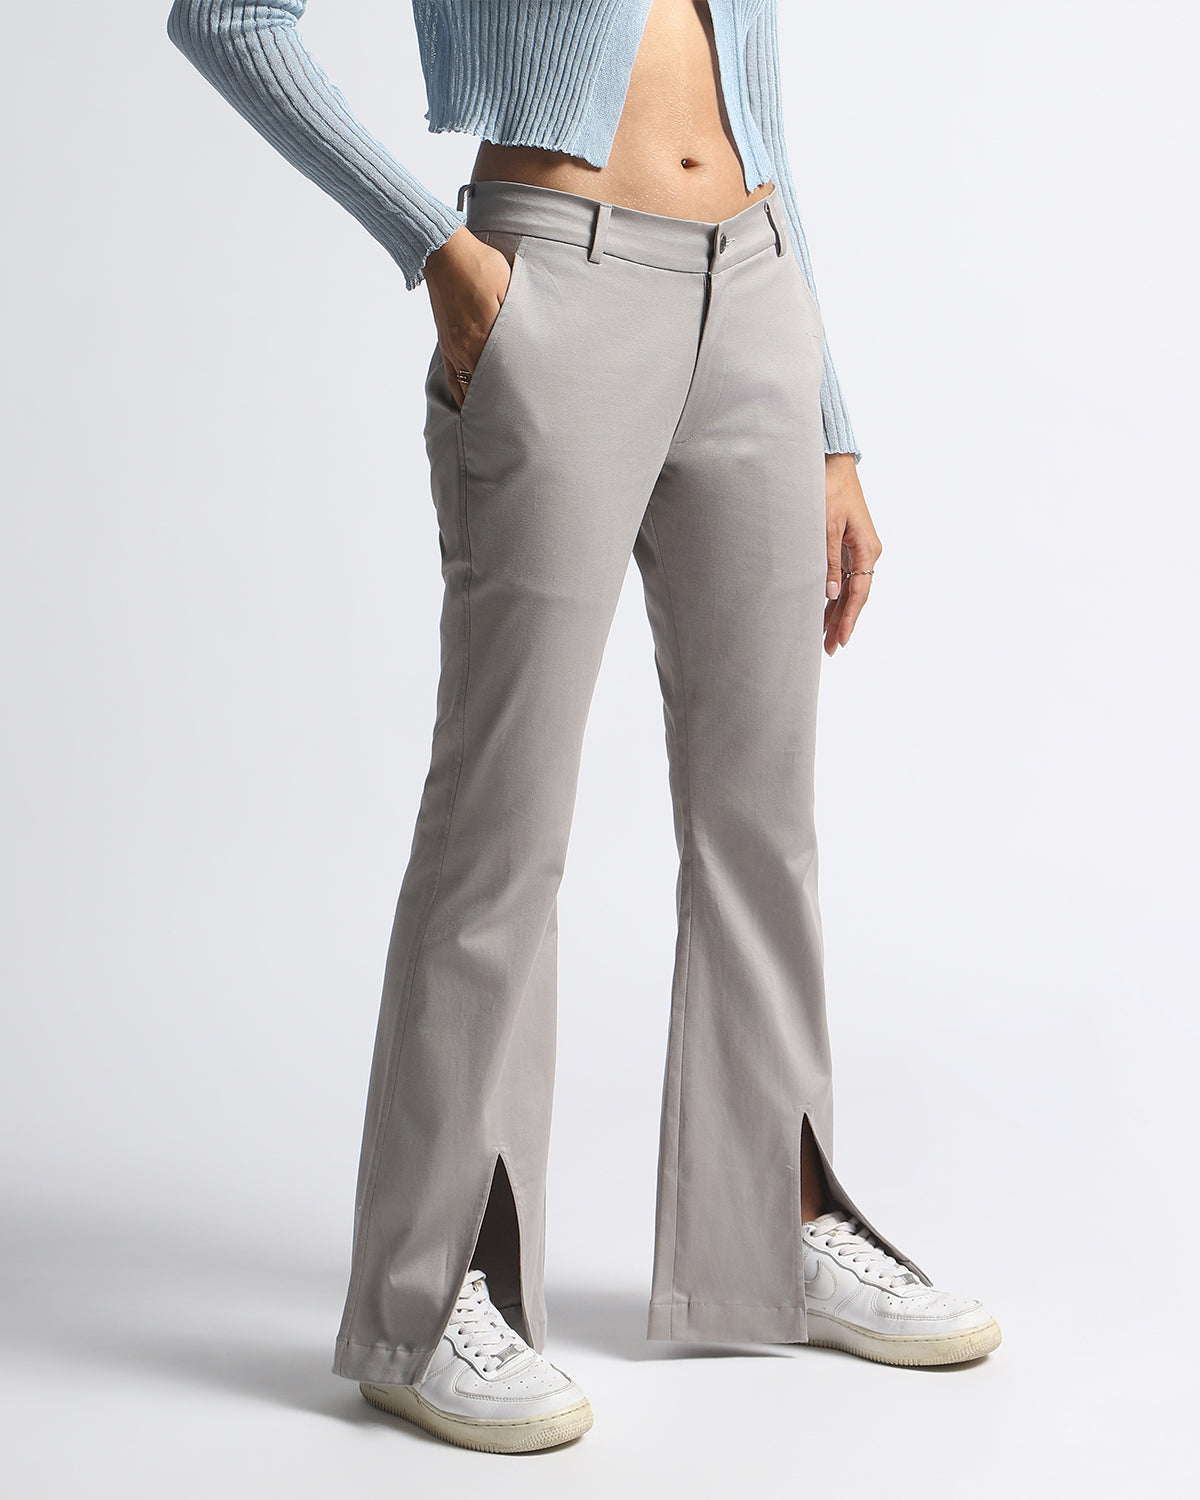 Women's Streetwear Pants Bundle Of 2